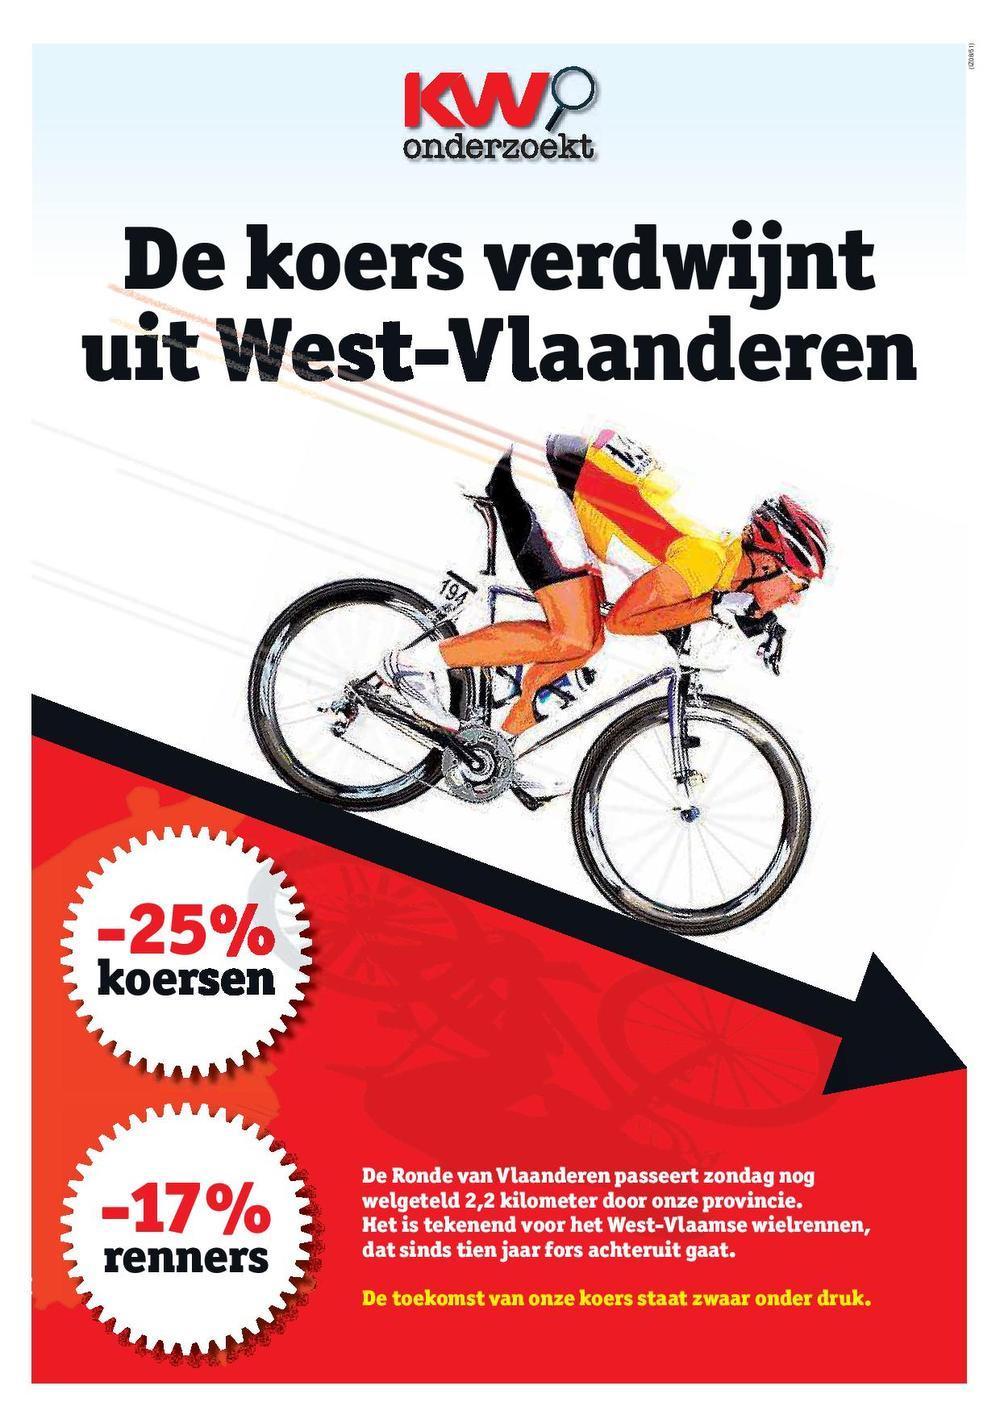 West-Vlaanderen verloor 25% van zijn koersen in 10 jaar tijd